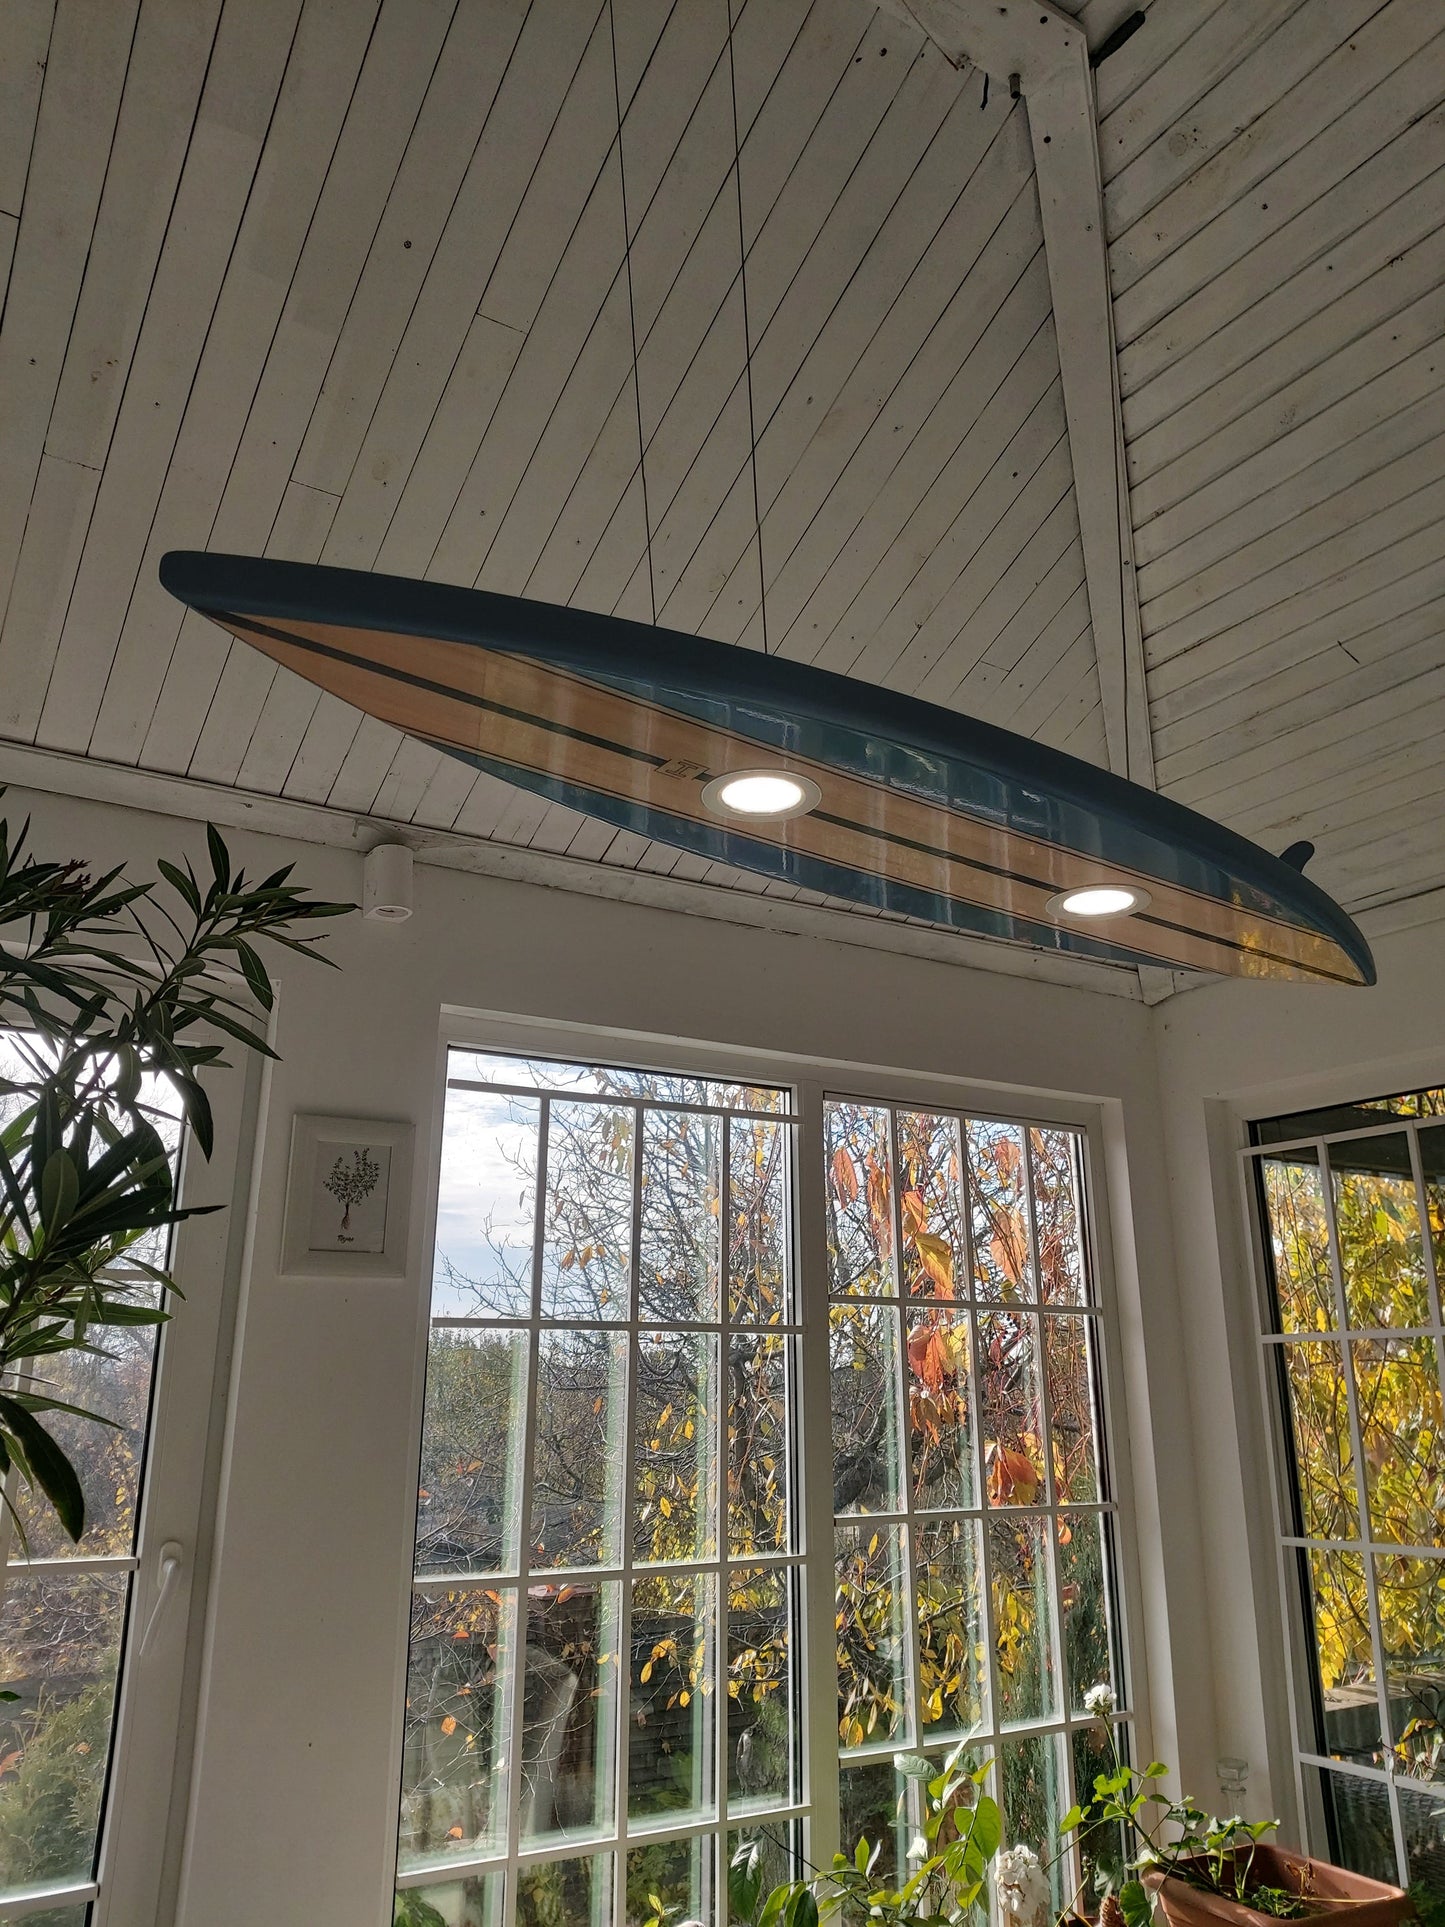 48 inch Surfboard Shaped Ceiling Chandelier - Pool Billiard Table Light